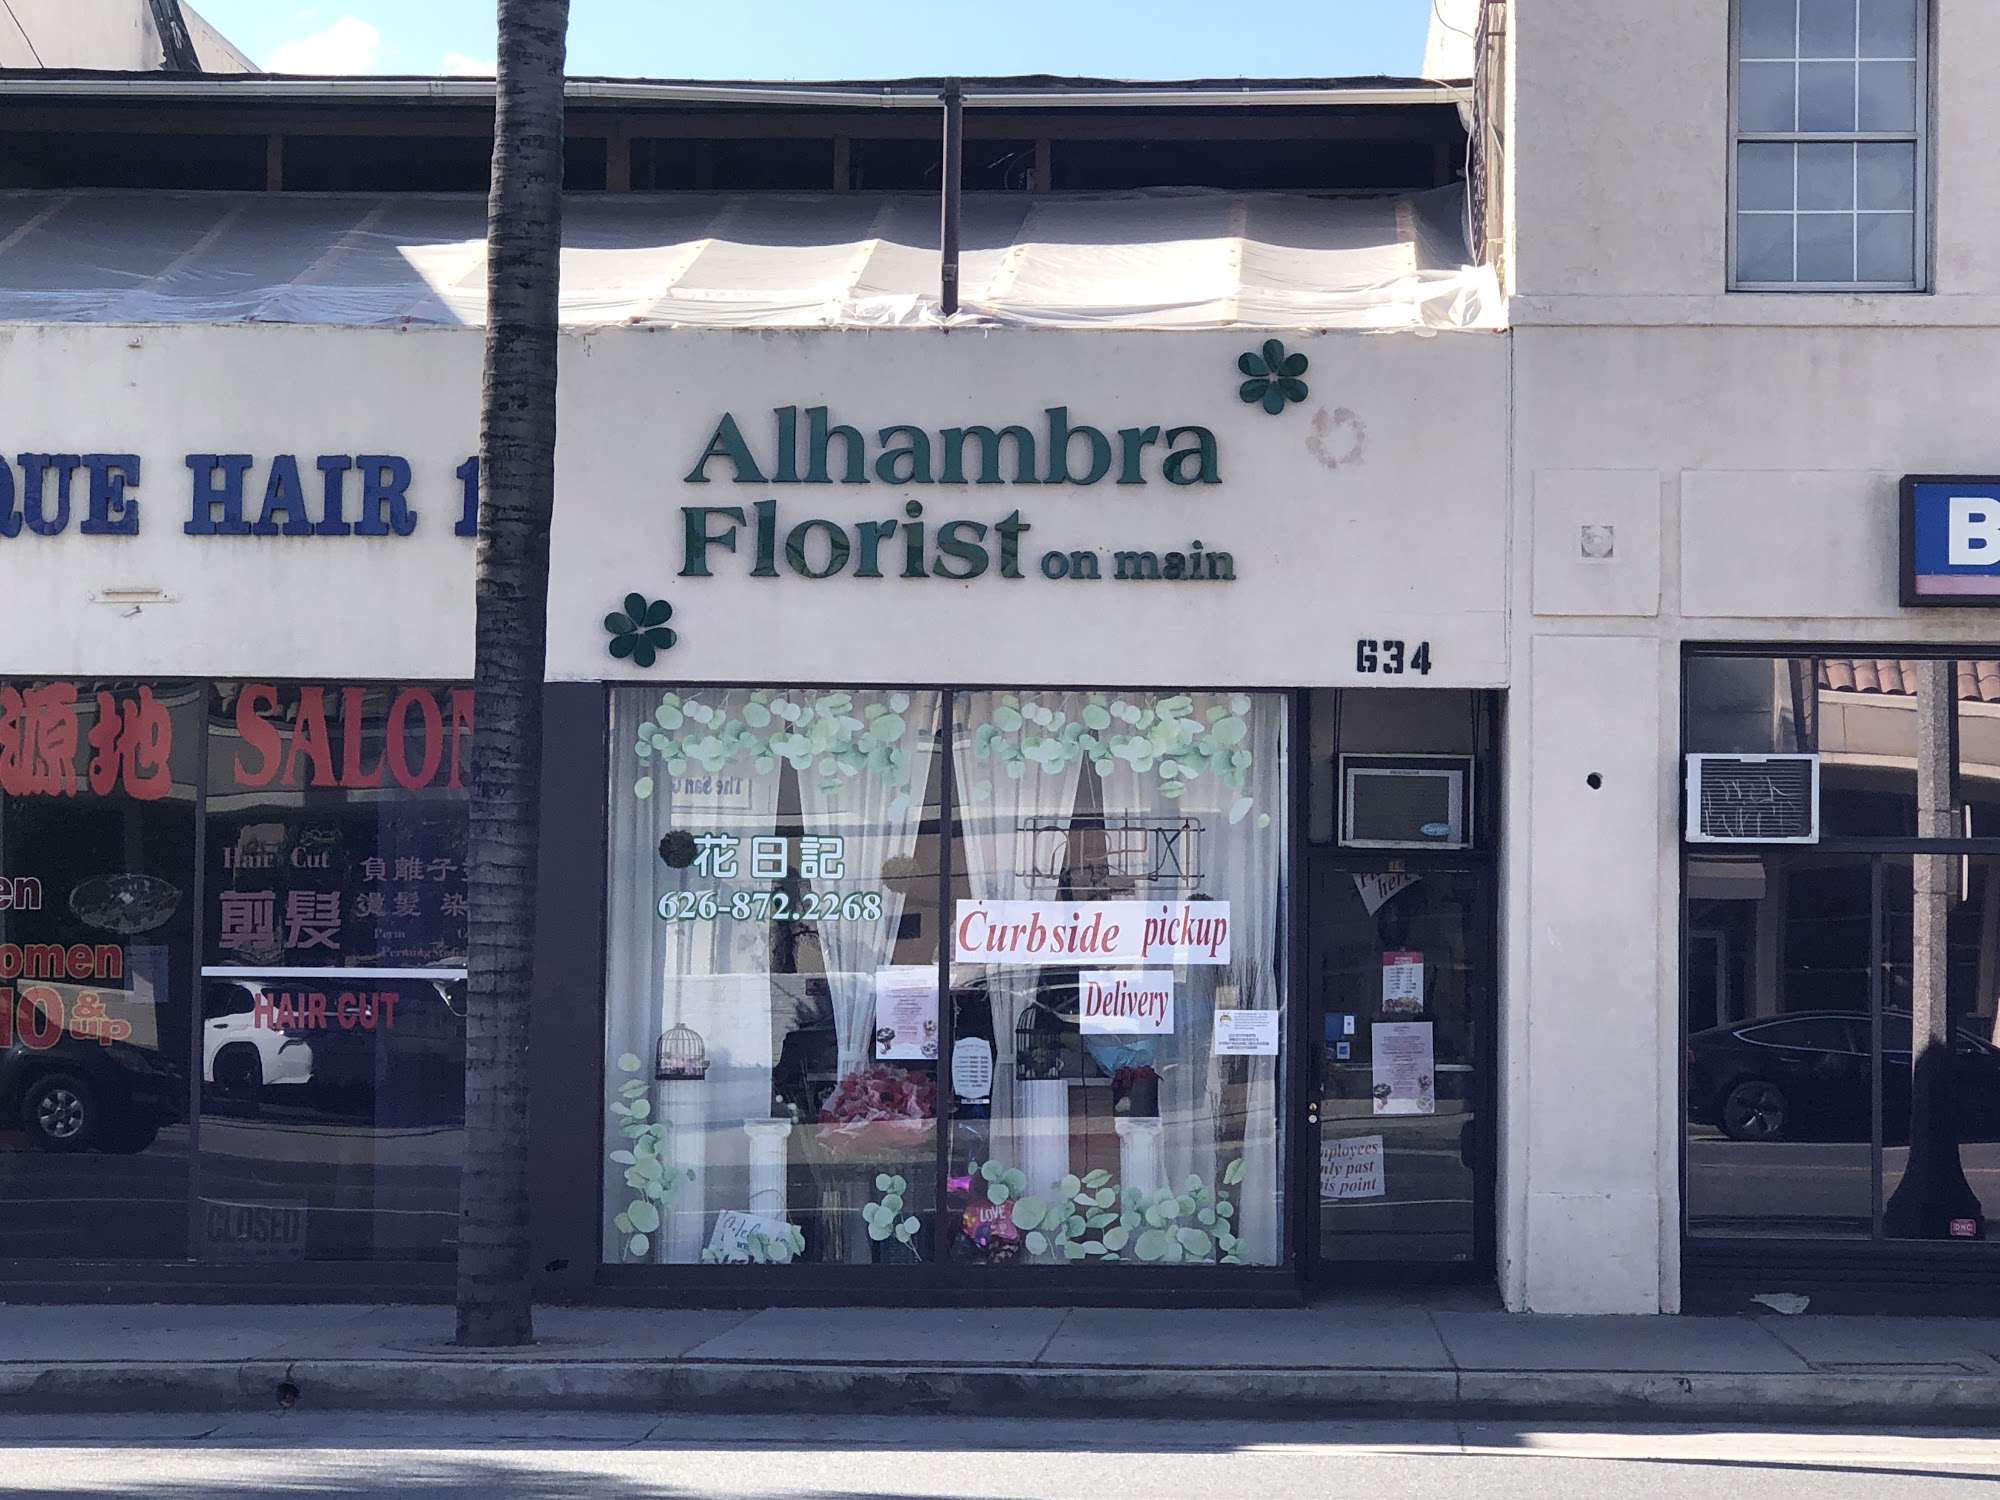 Alhambra Florist on Main